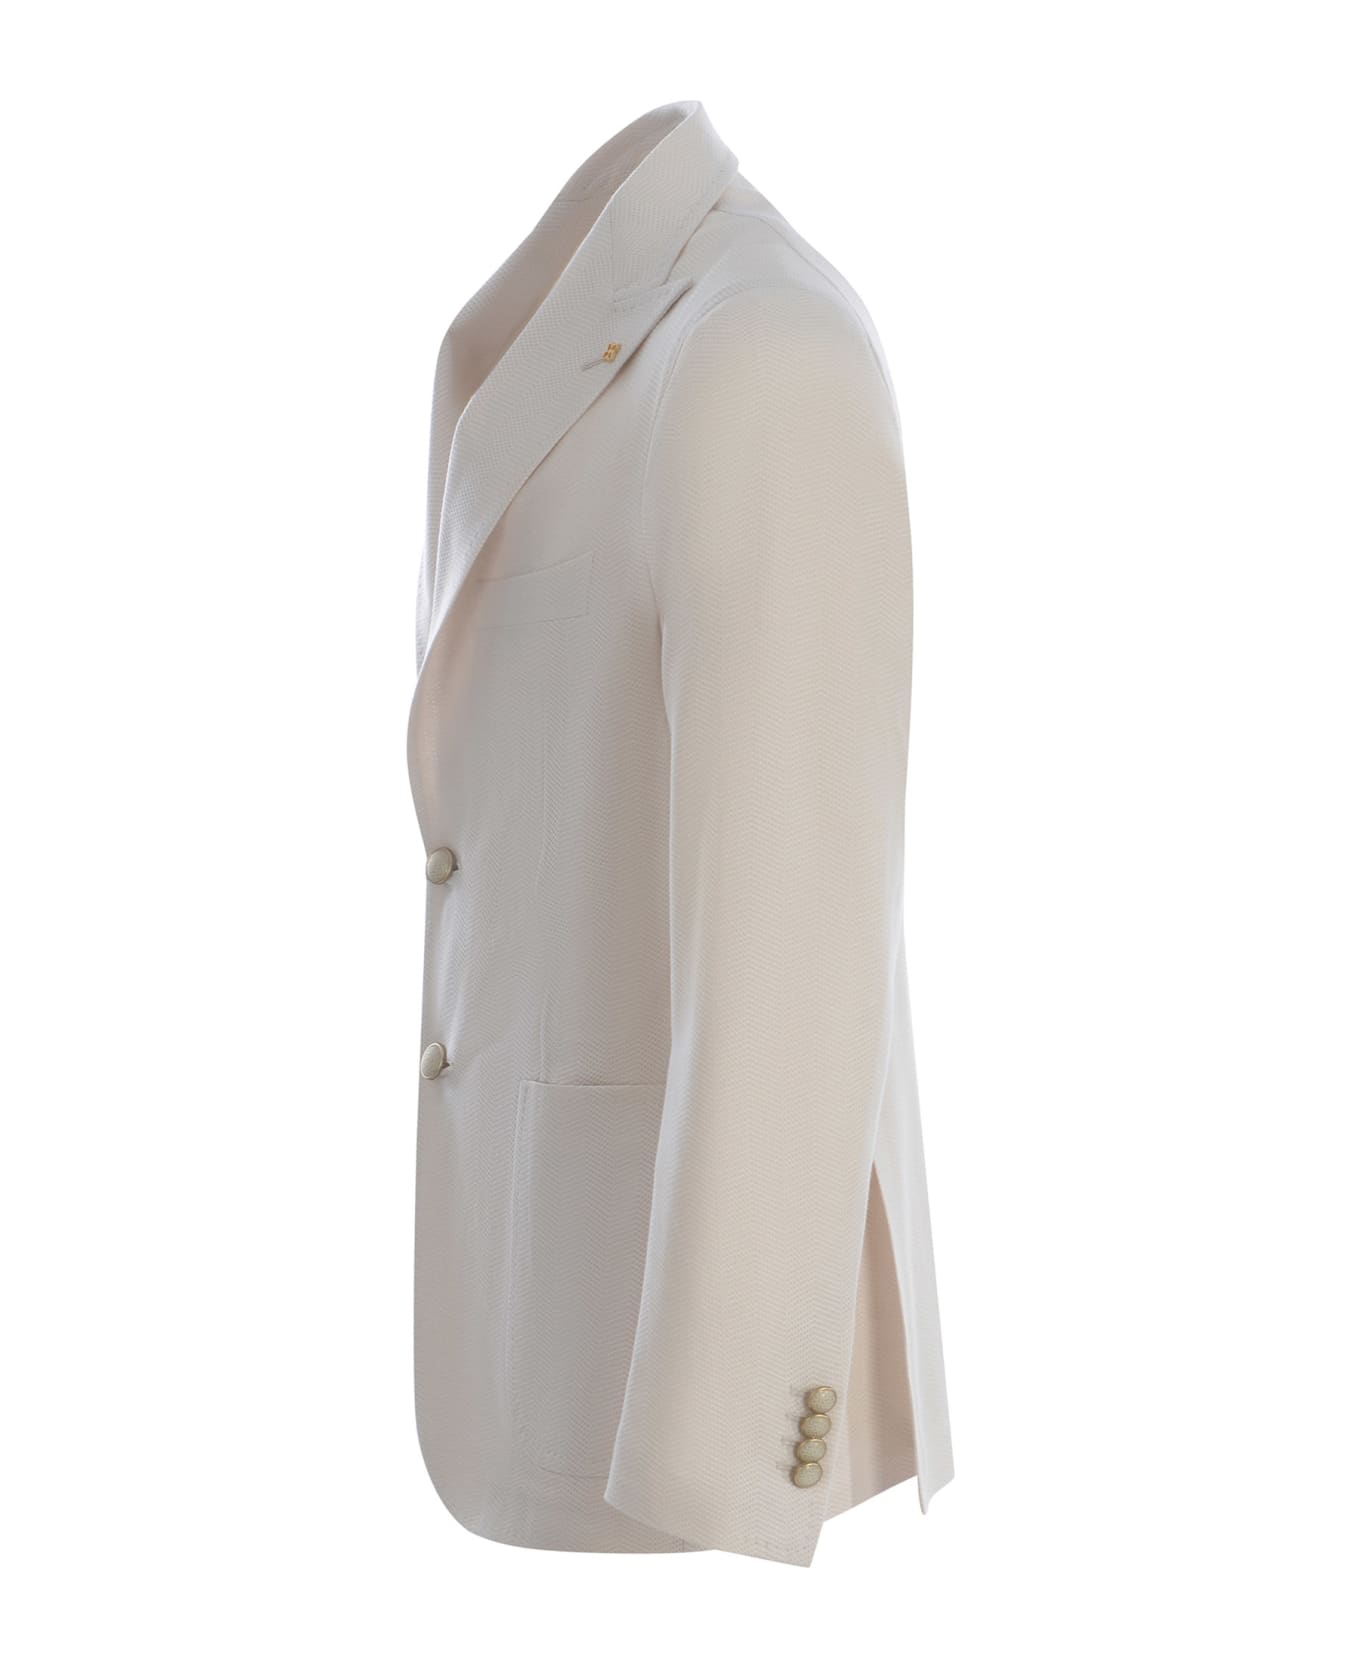 Tagliatore Single-breasted Jacket Tagliatore Made Of Cotton - Crema